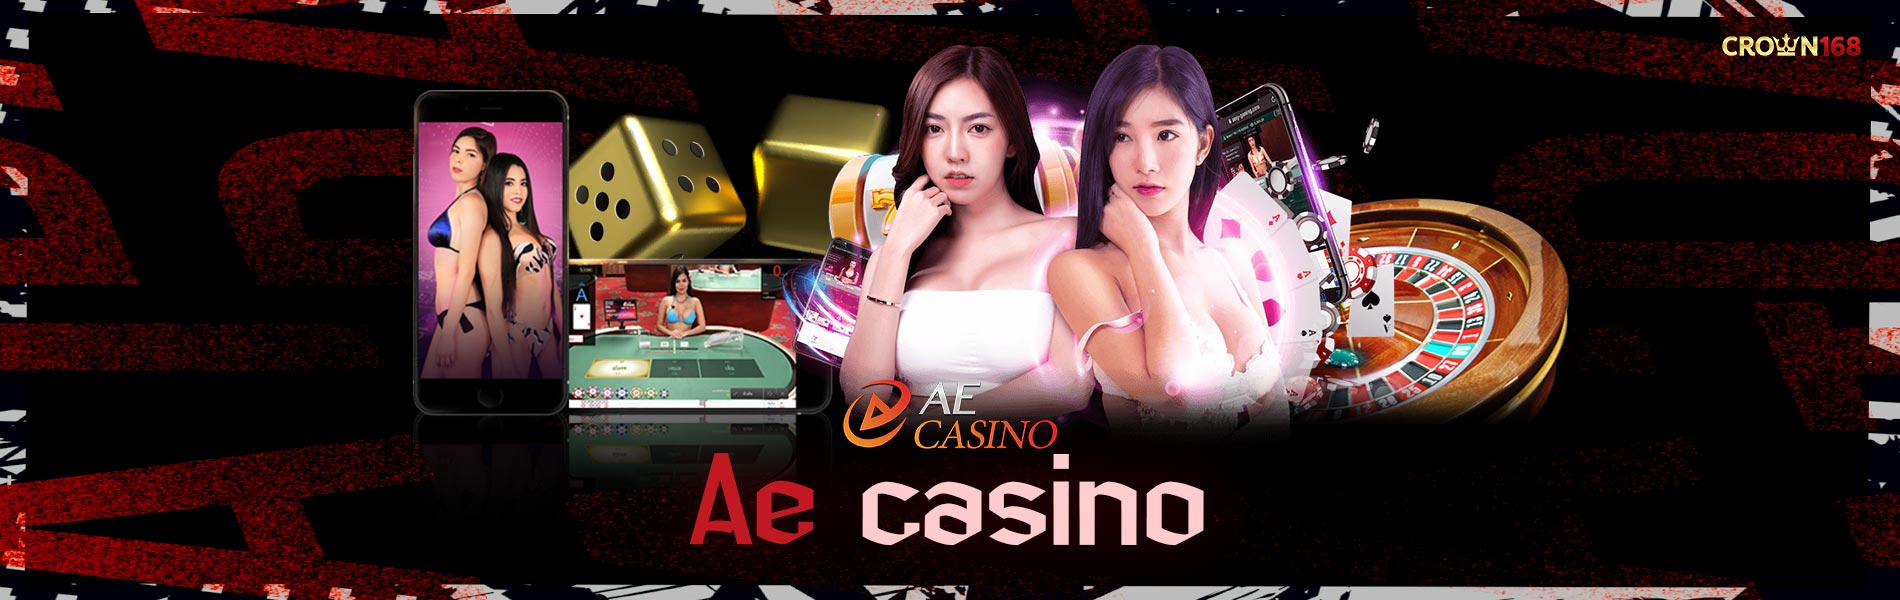 Ae-casino